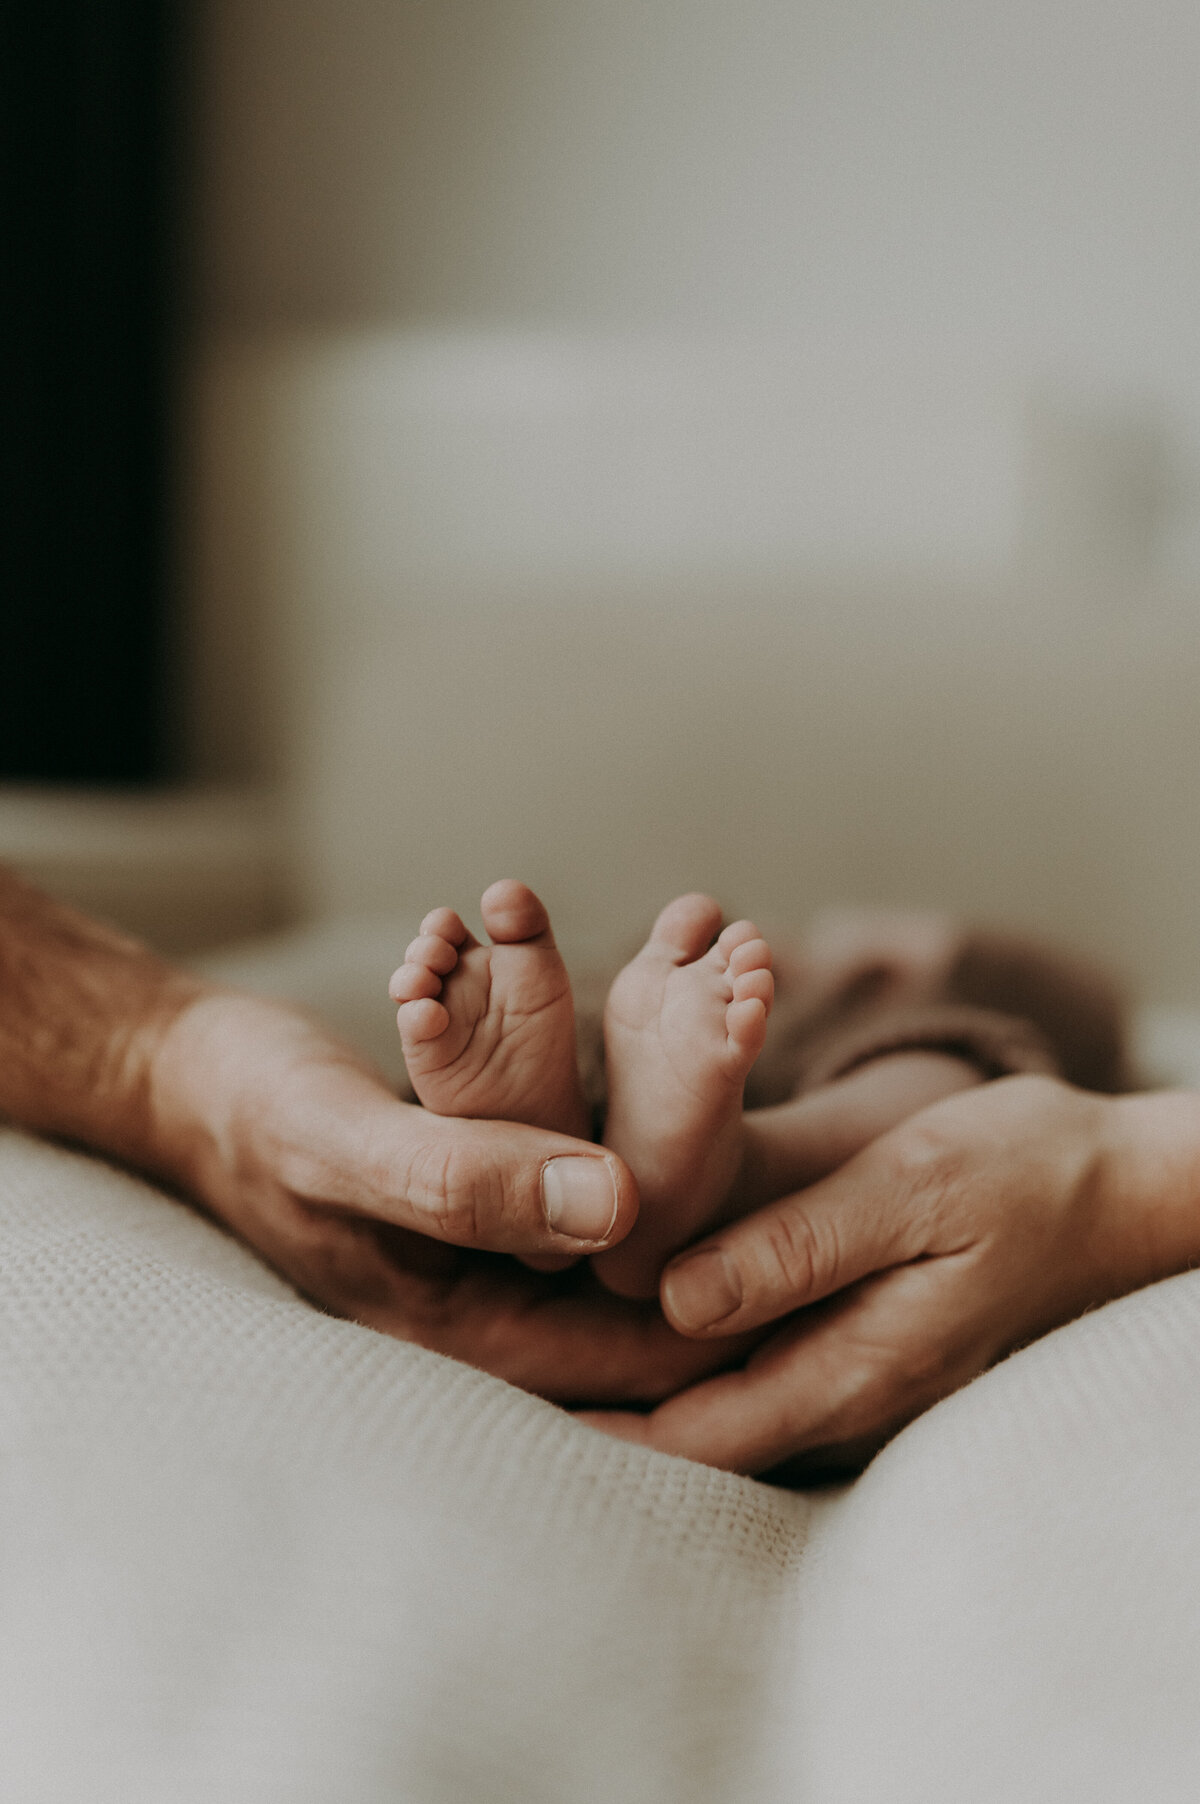 Detailfoto van voeten van een baby en handen van de ouders.